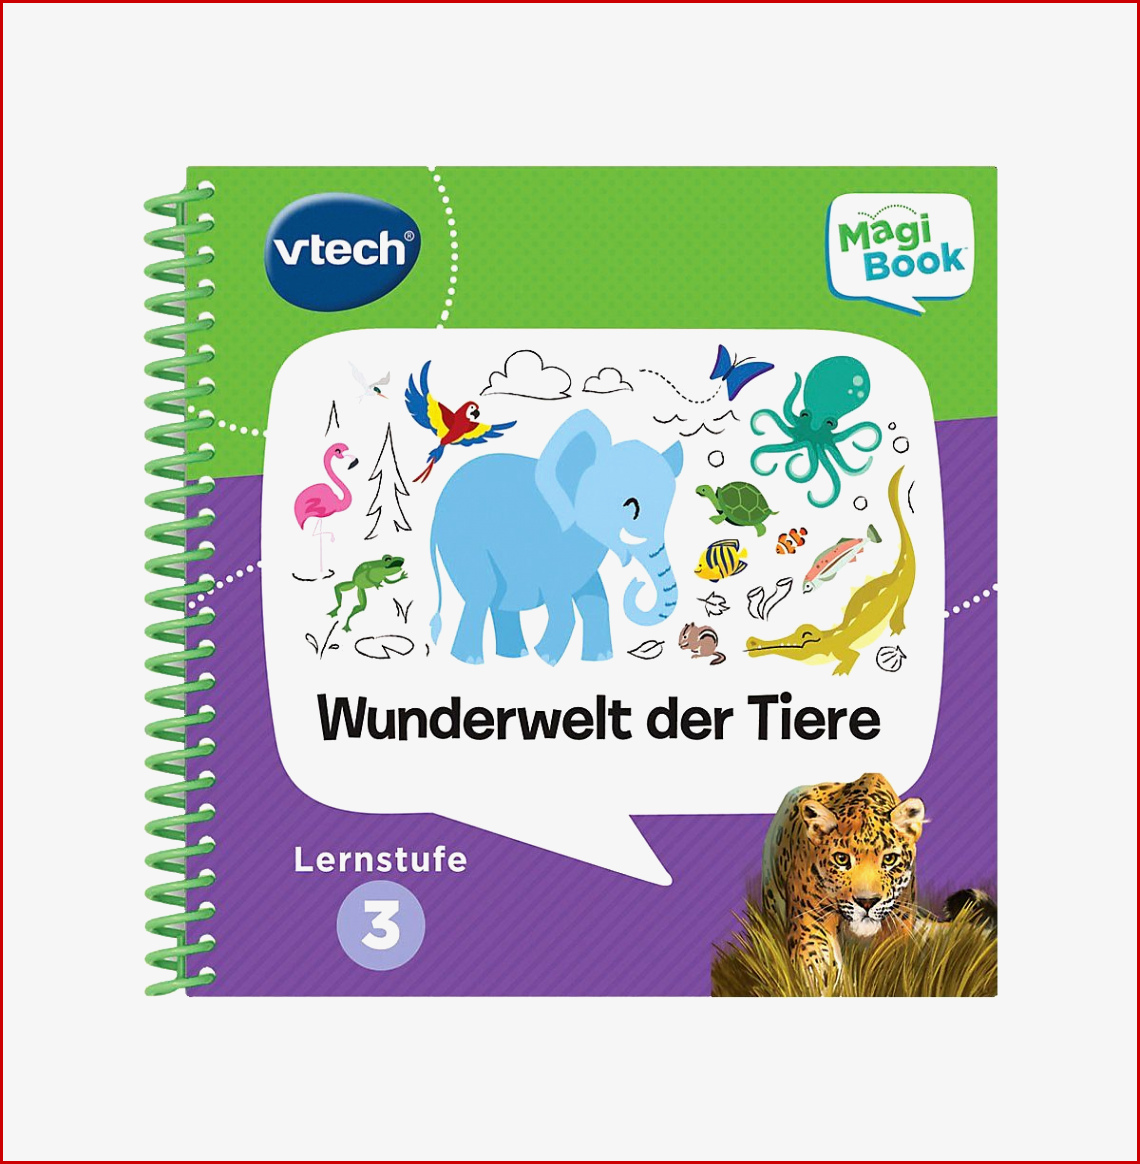 Günstig Kaufen Shop Vtech Lernspielzeug Magibook Lernbuch